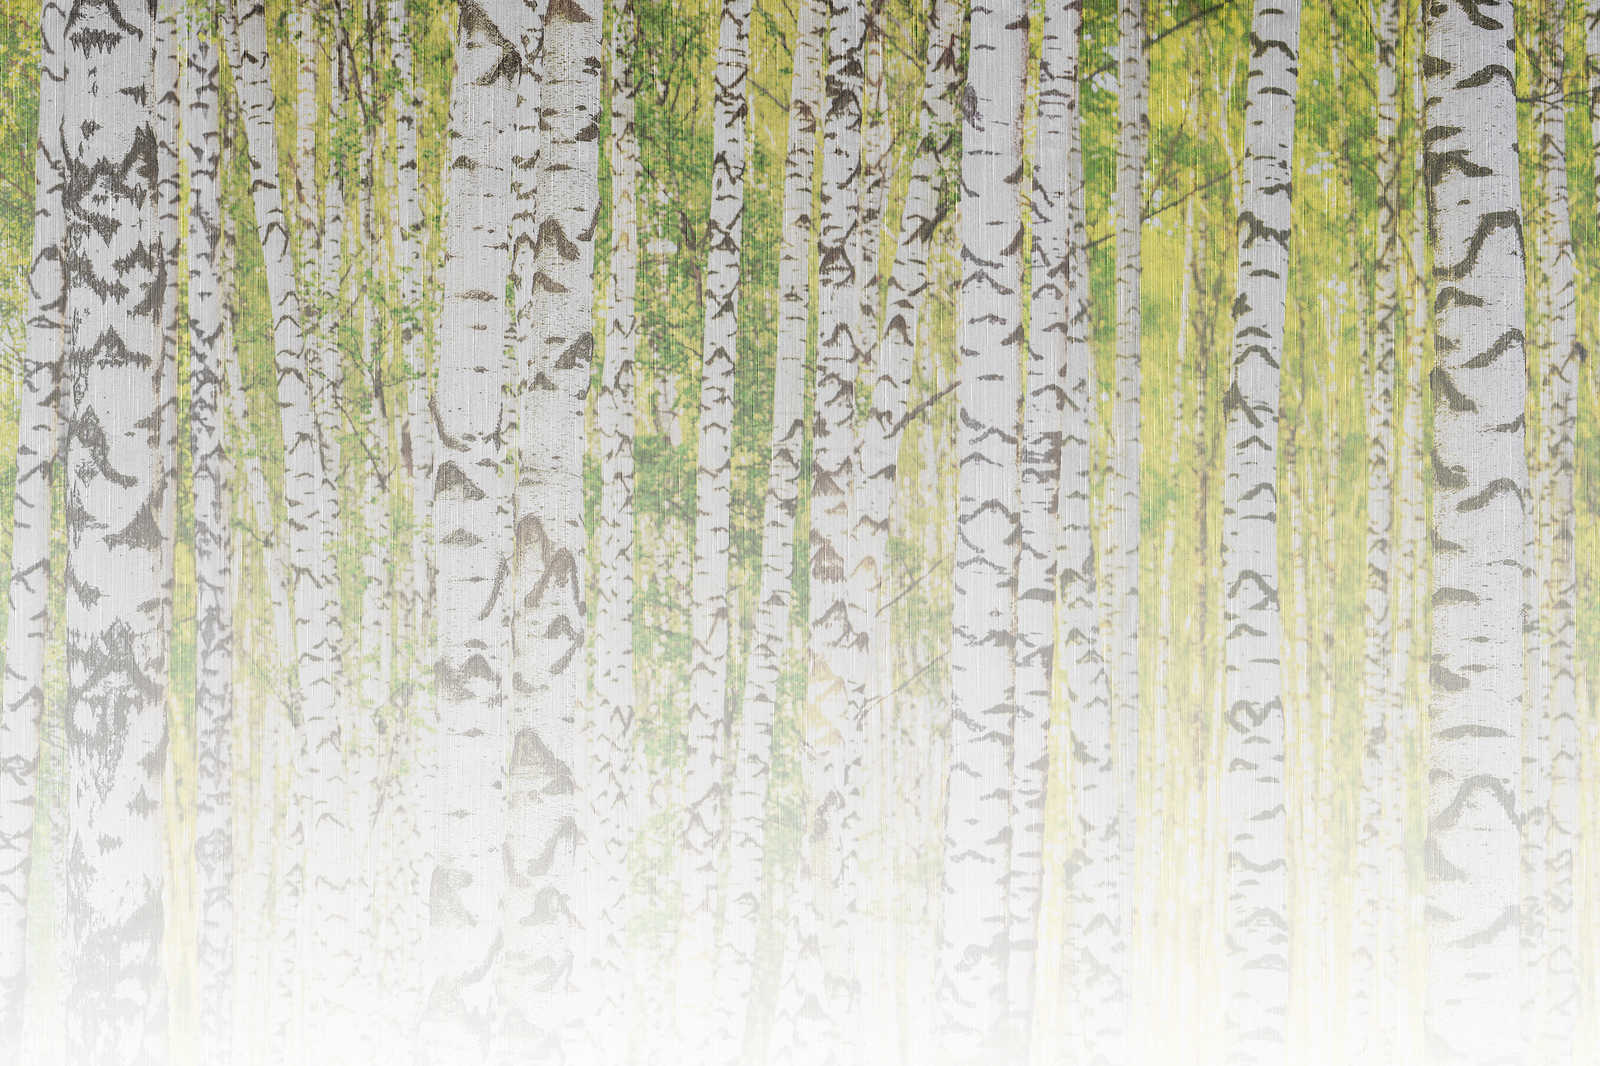             Tableau toile avec forêt de bouleaux à l'aspect structuré de lin - 0,90 m x 0,60 m
        